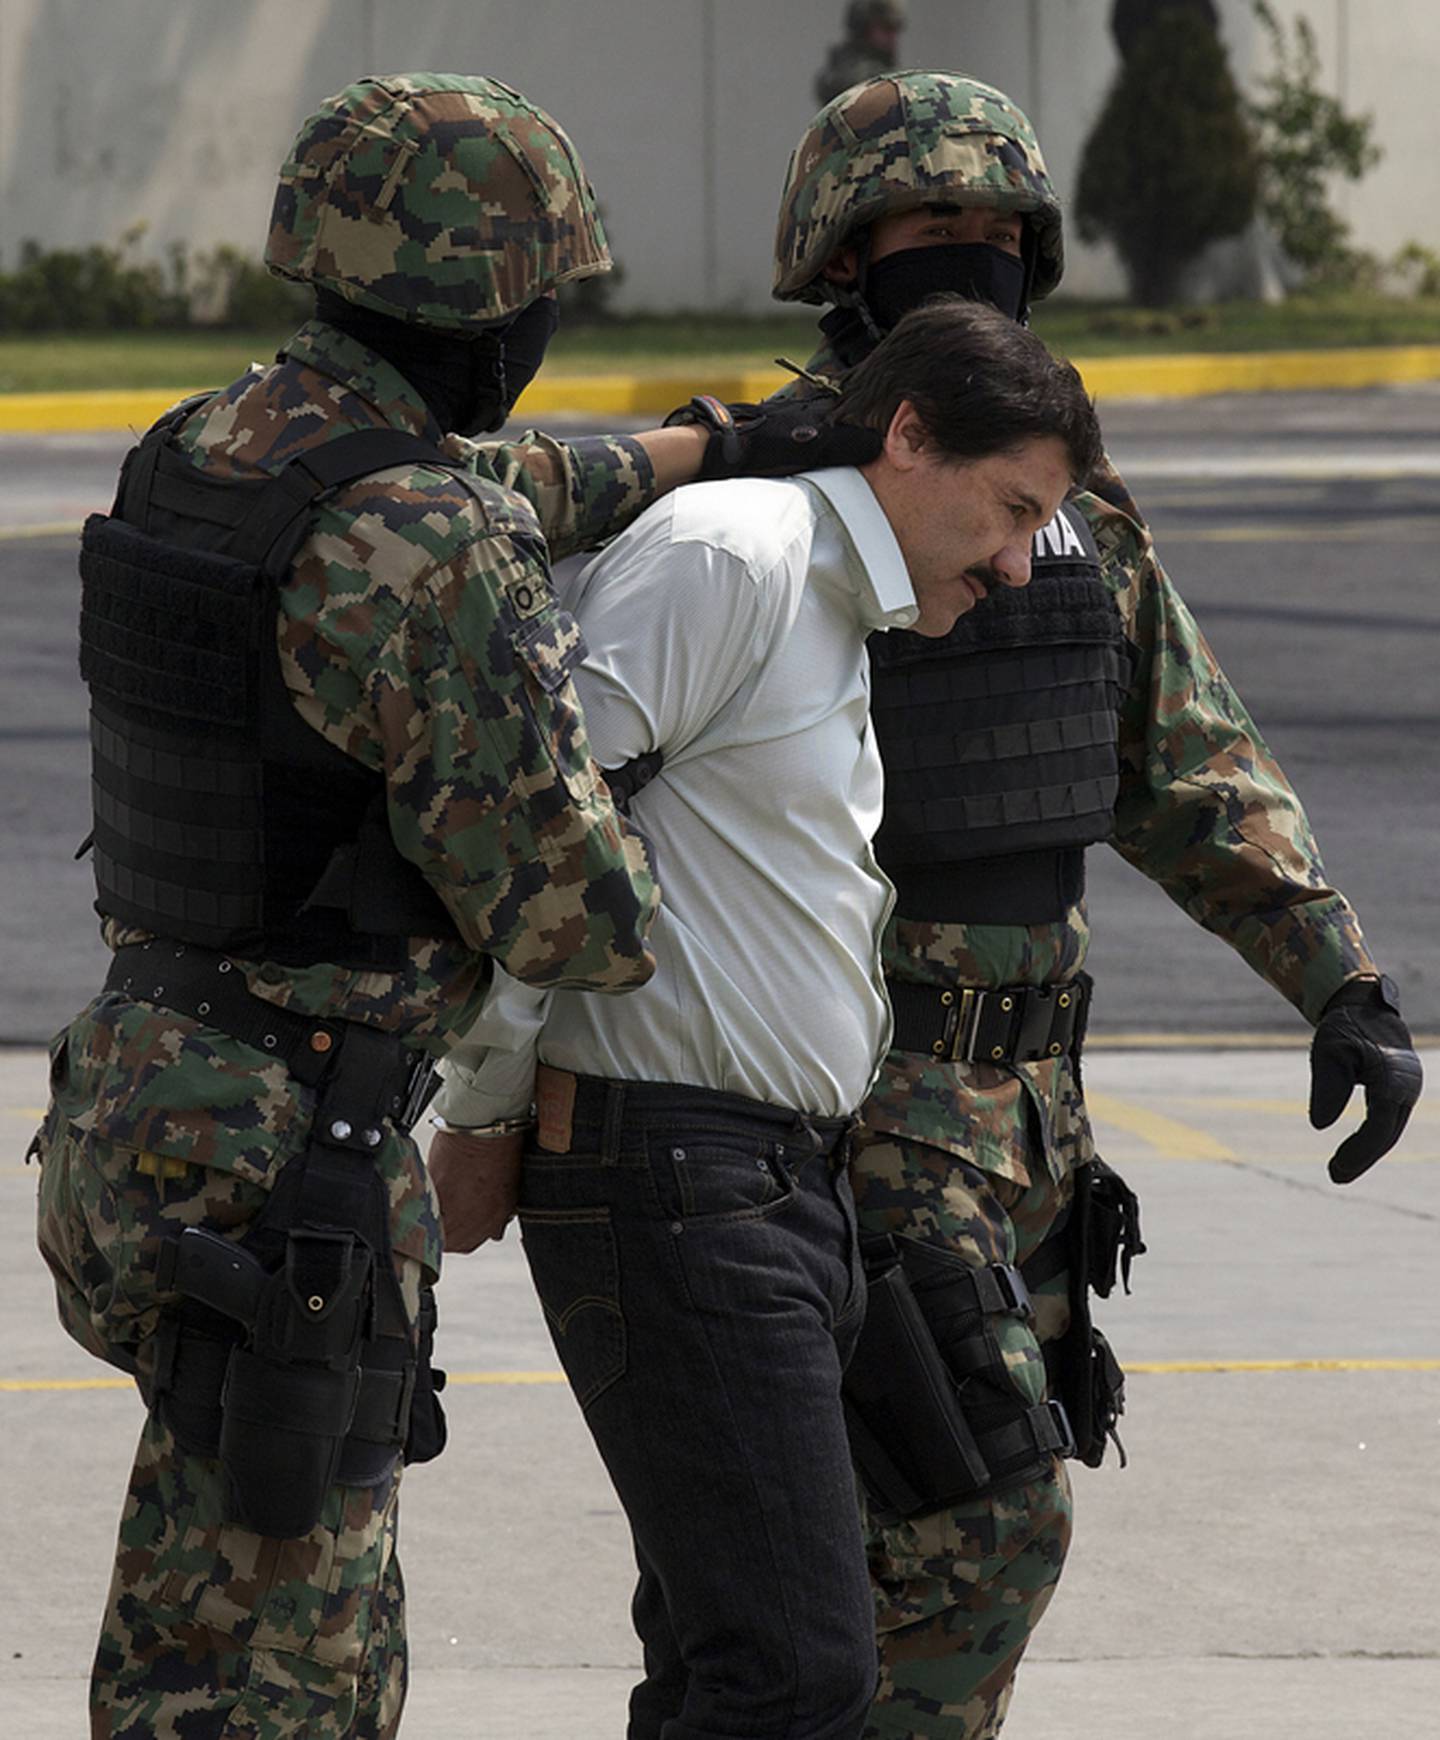 Un segundo juez considera procedente extradición del Chapo Guzmán a EE. UU.  | La Nación